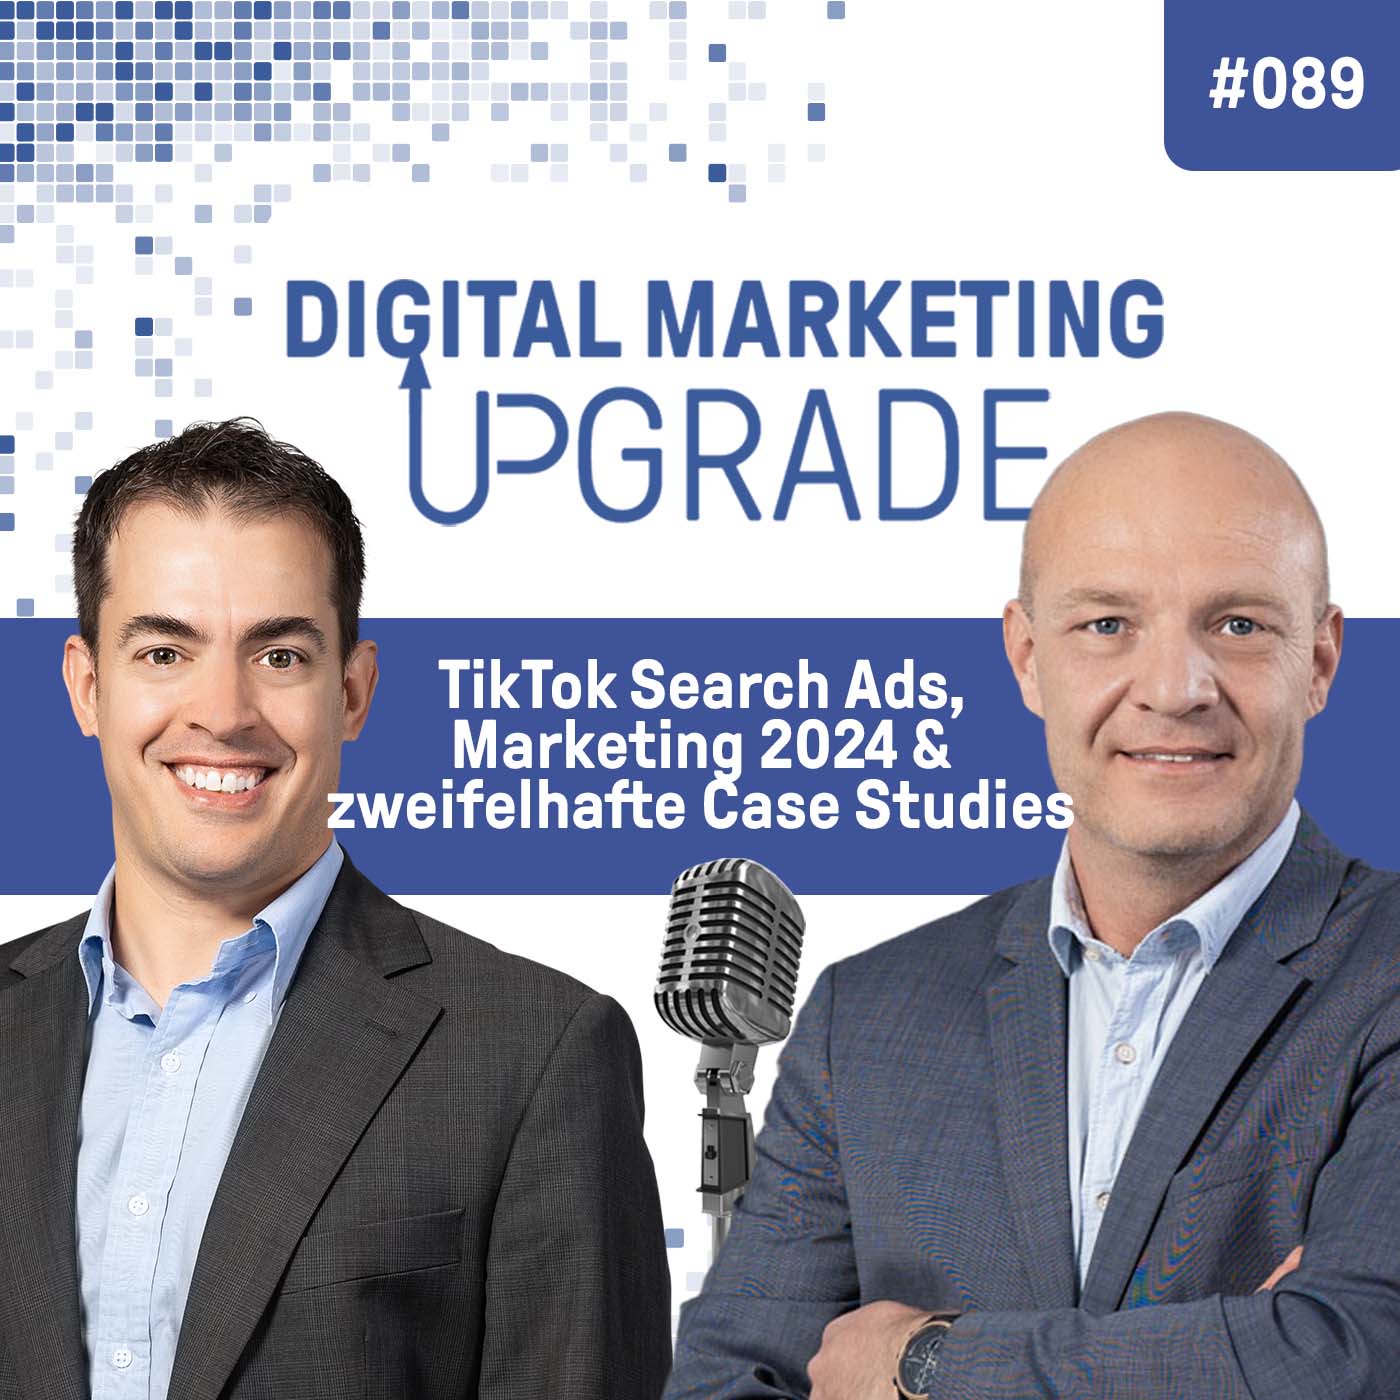 TikTok Search Ads, Marketing 2024 und zweifelhafte Case Studies